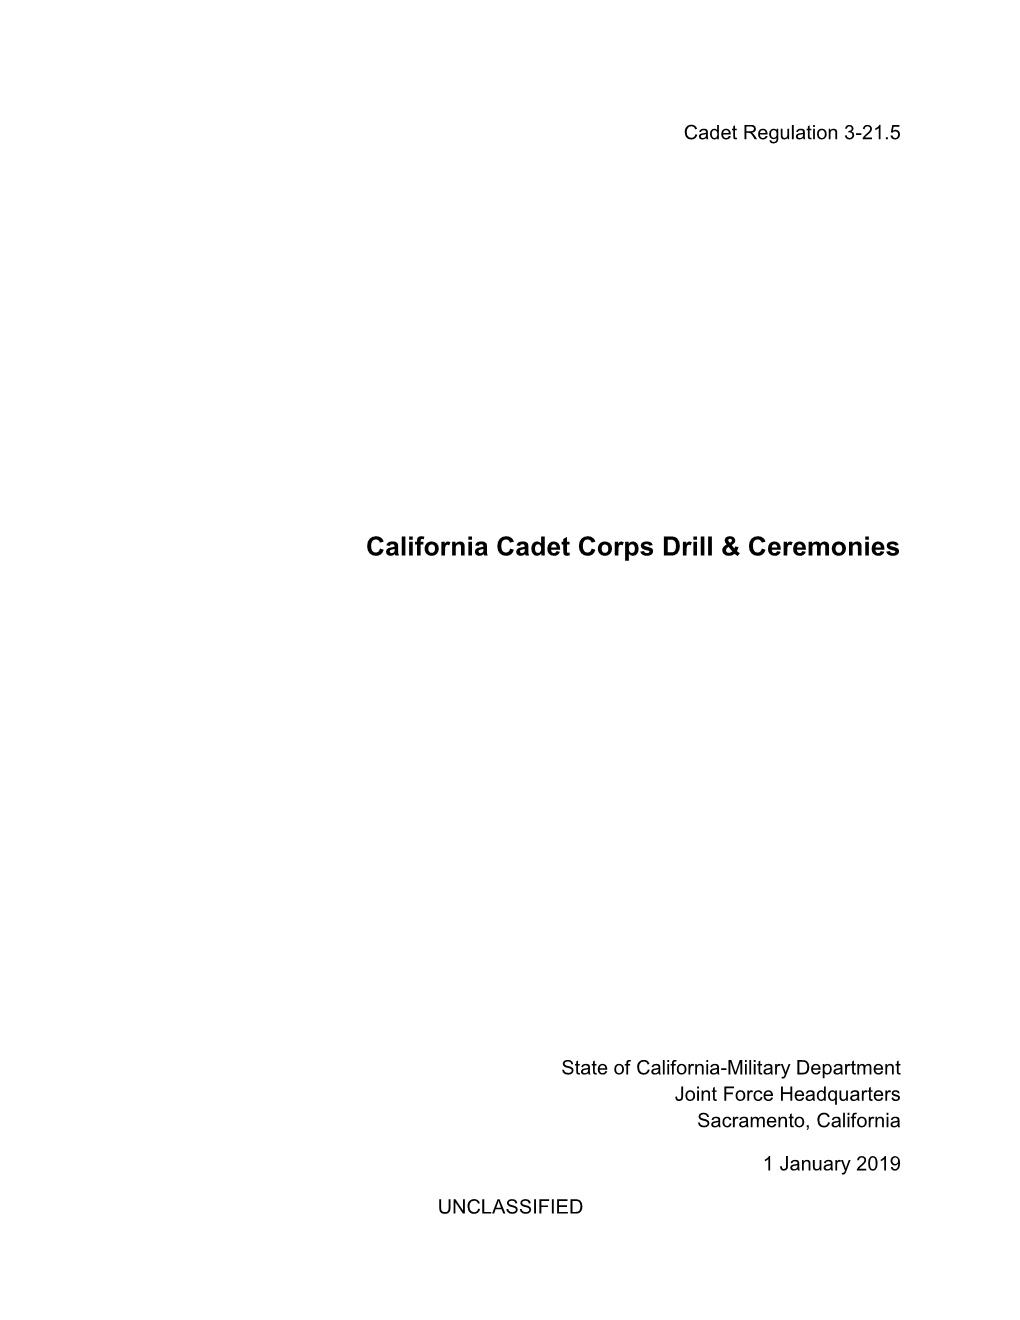 California Cadet Corps Drill & Ceremonies